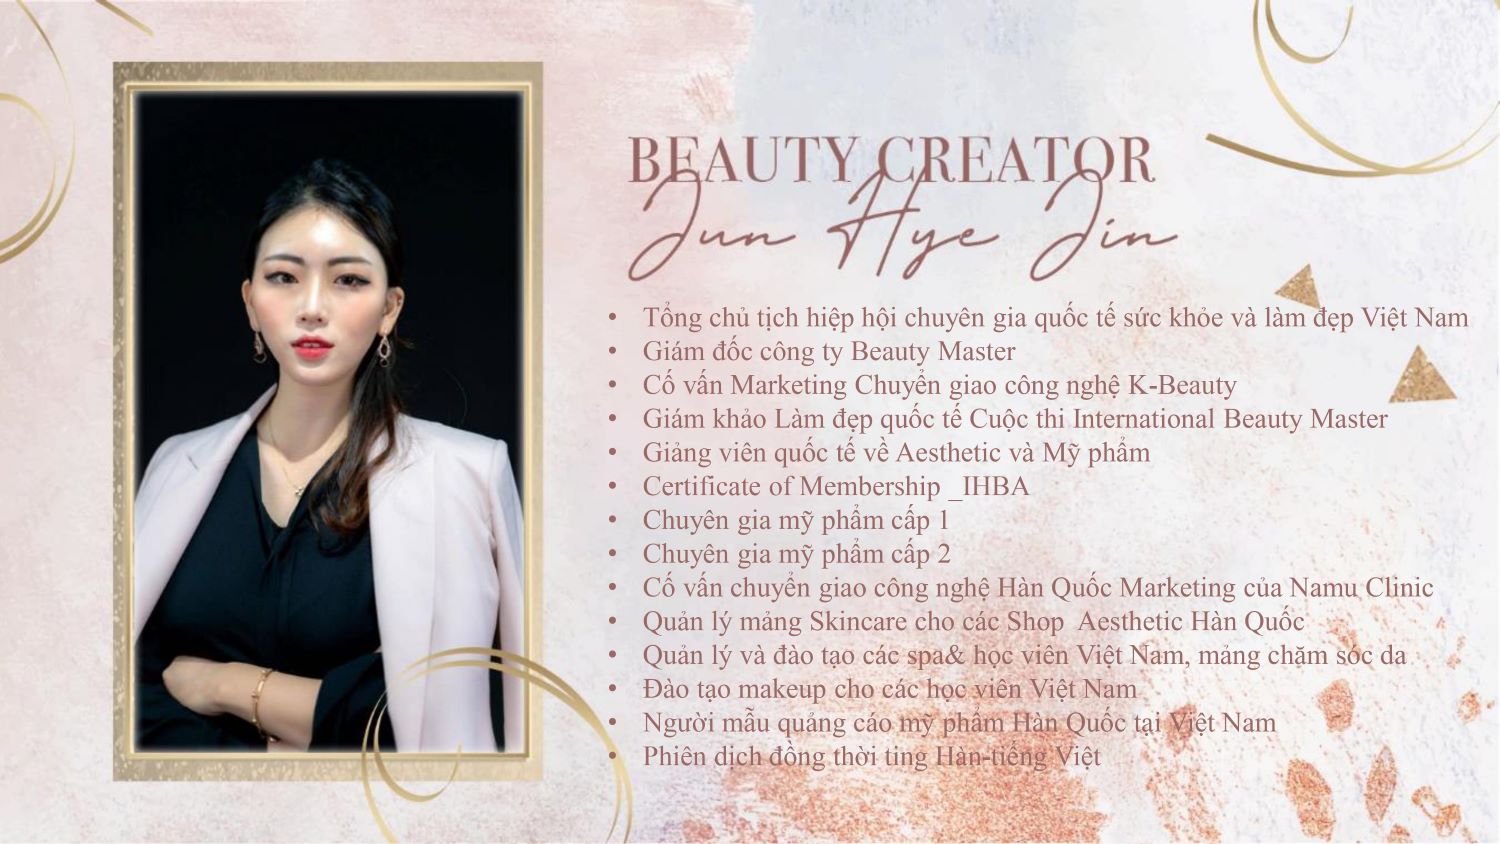 Profile của CEO Jun Hye JIn